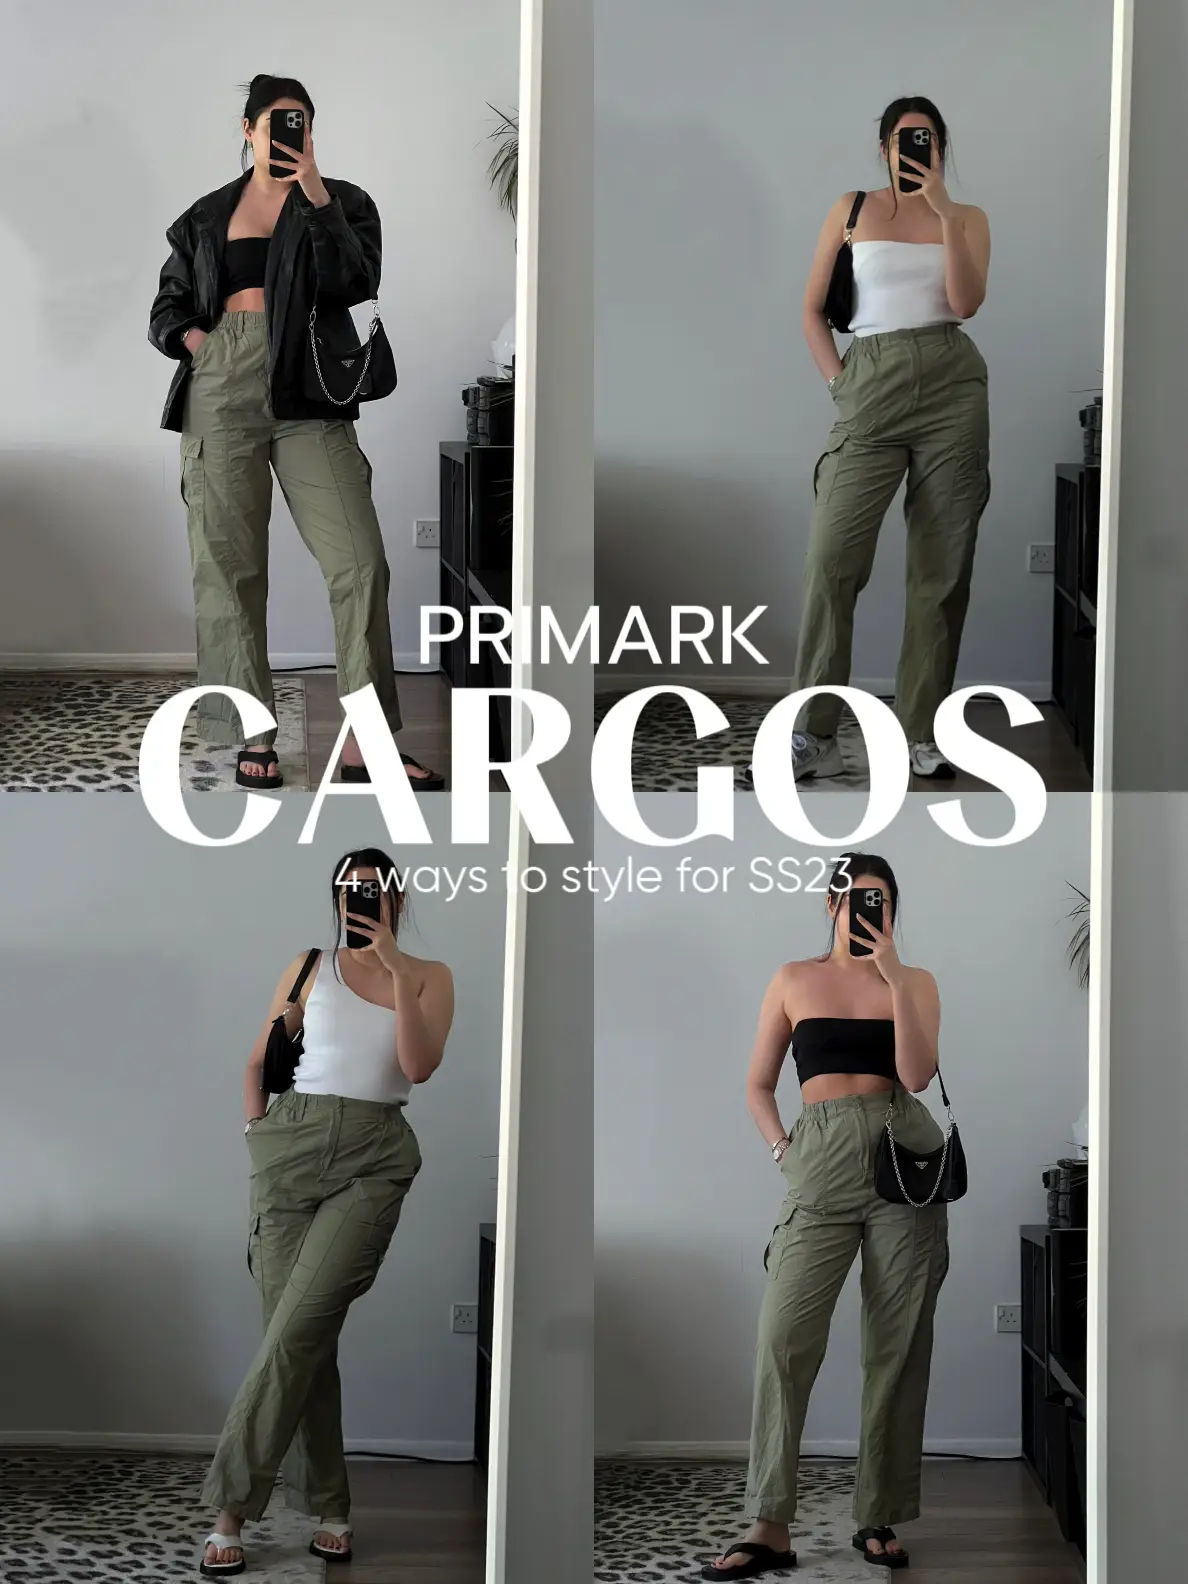 Fashion fans 'despise' design flaw on Primark's viral leggings